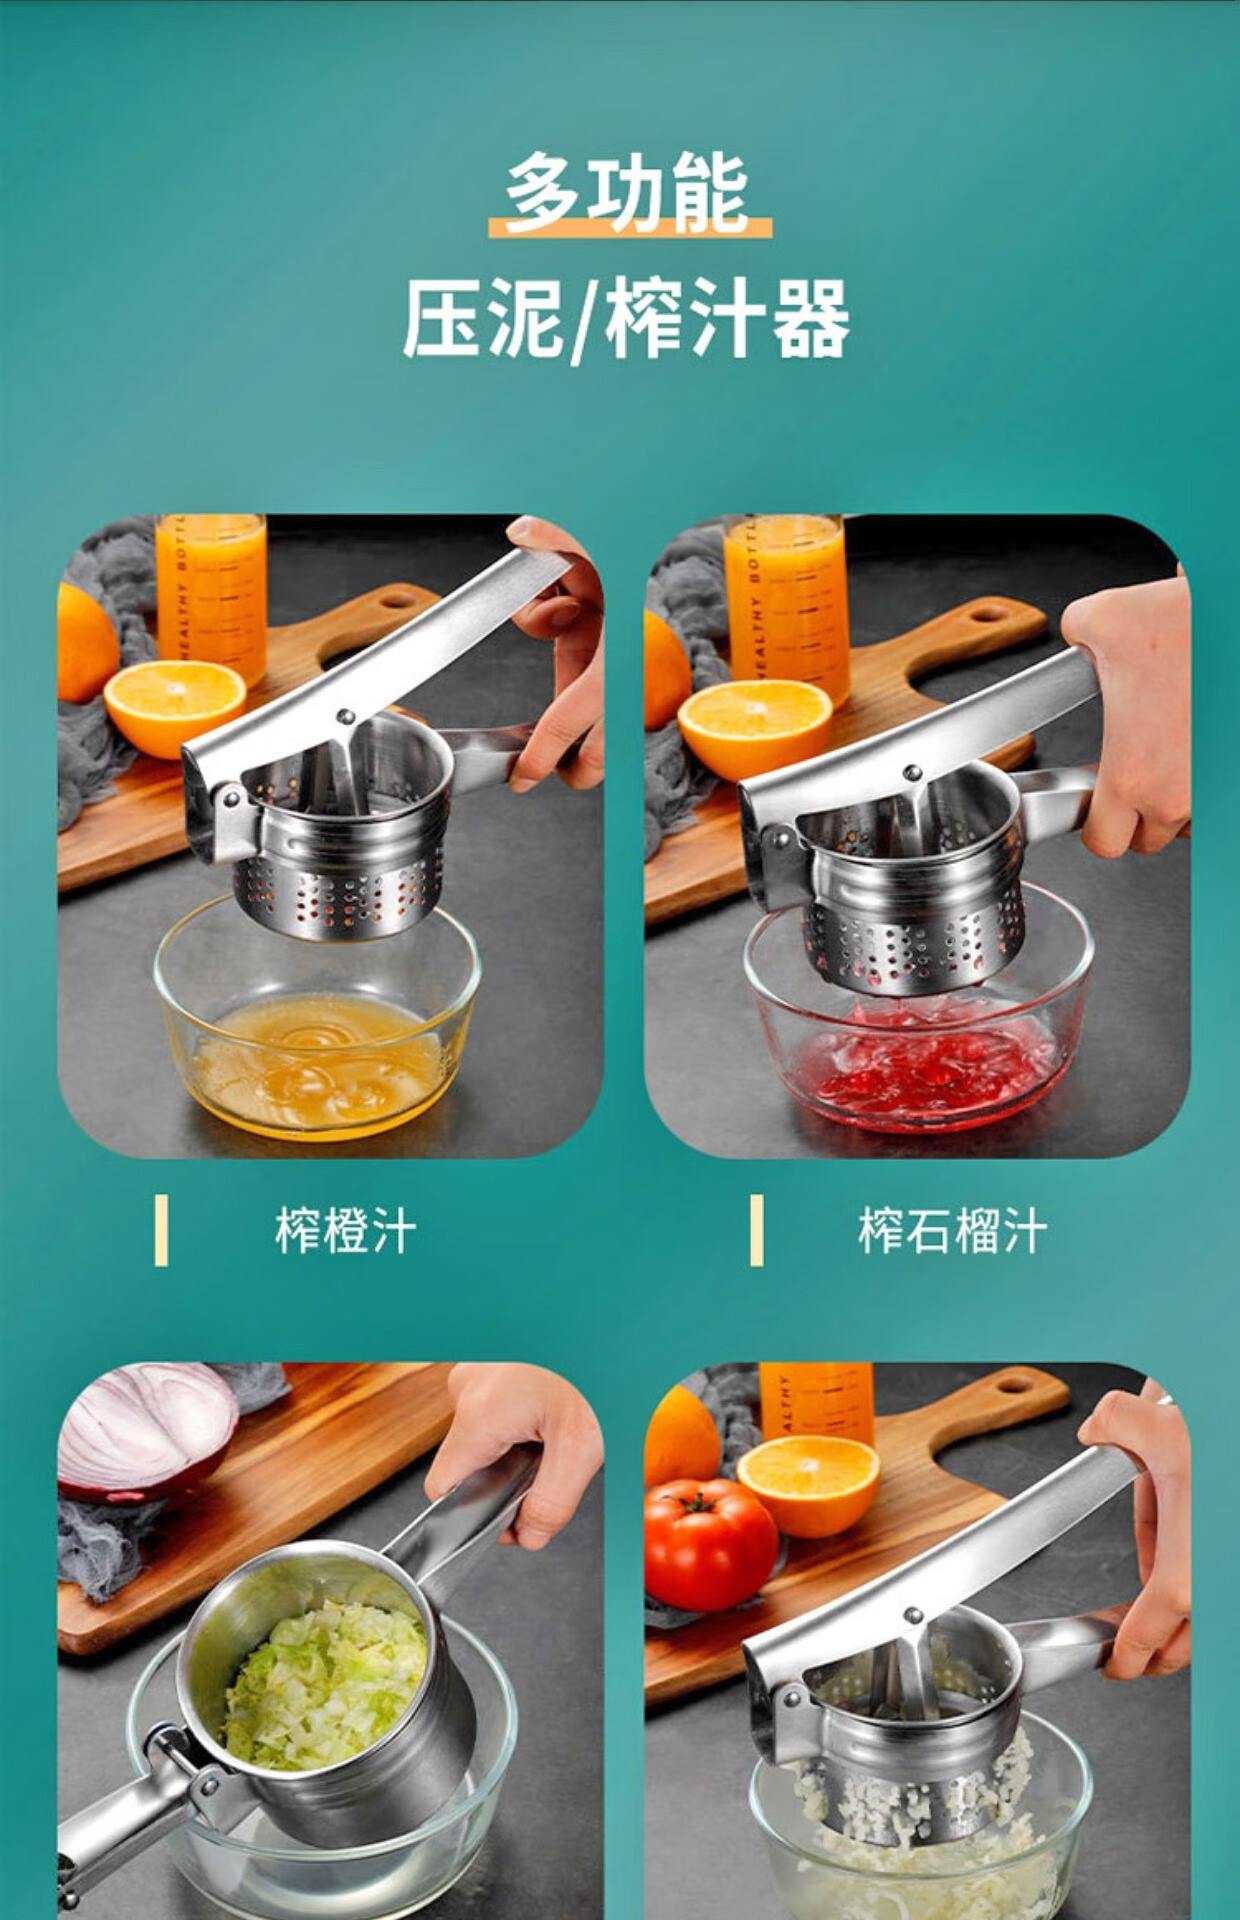 石榴榨汁神器手动榨汁器不锈钢家用水果石榴榨汁机橙子挤压器榨汁神器